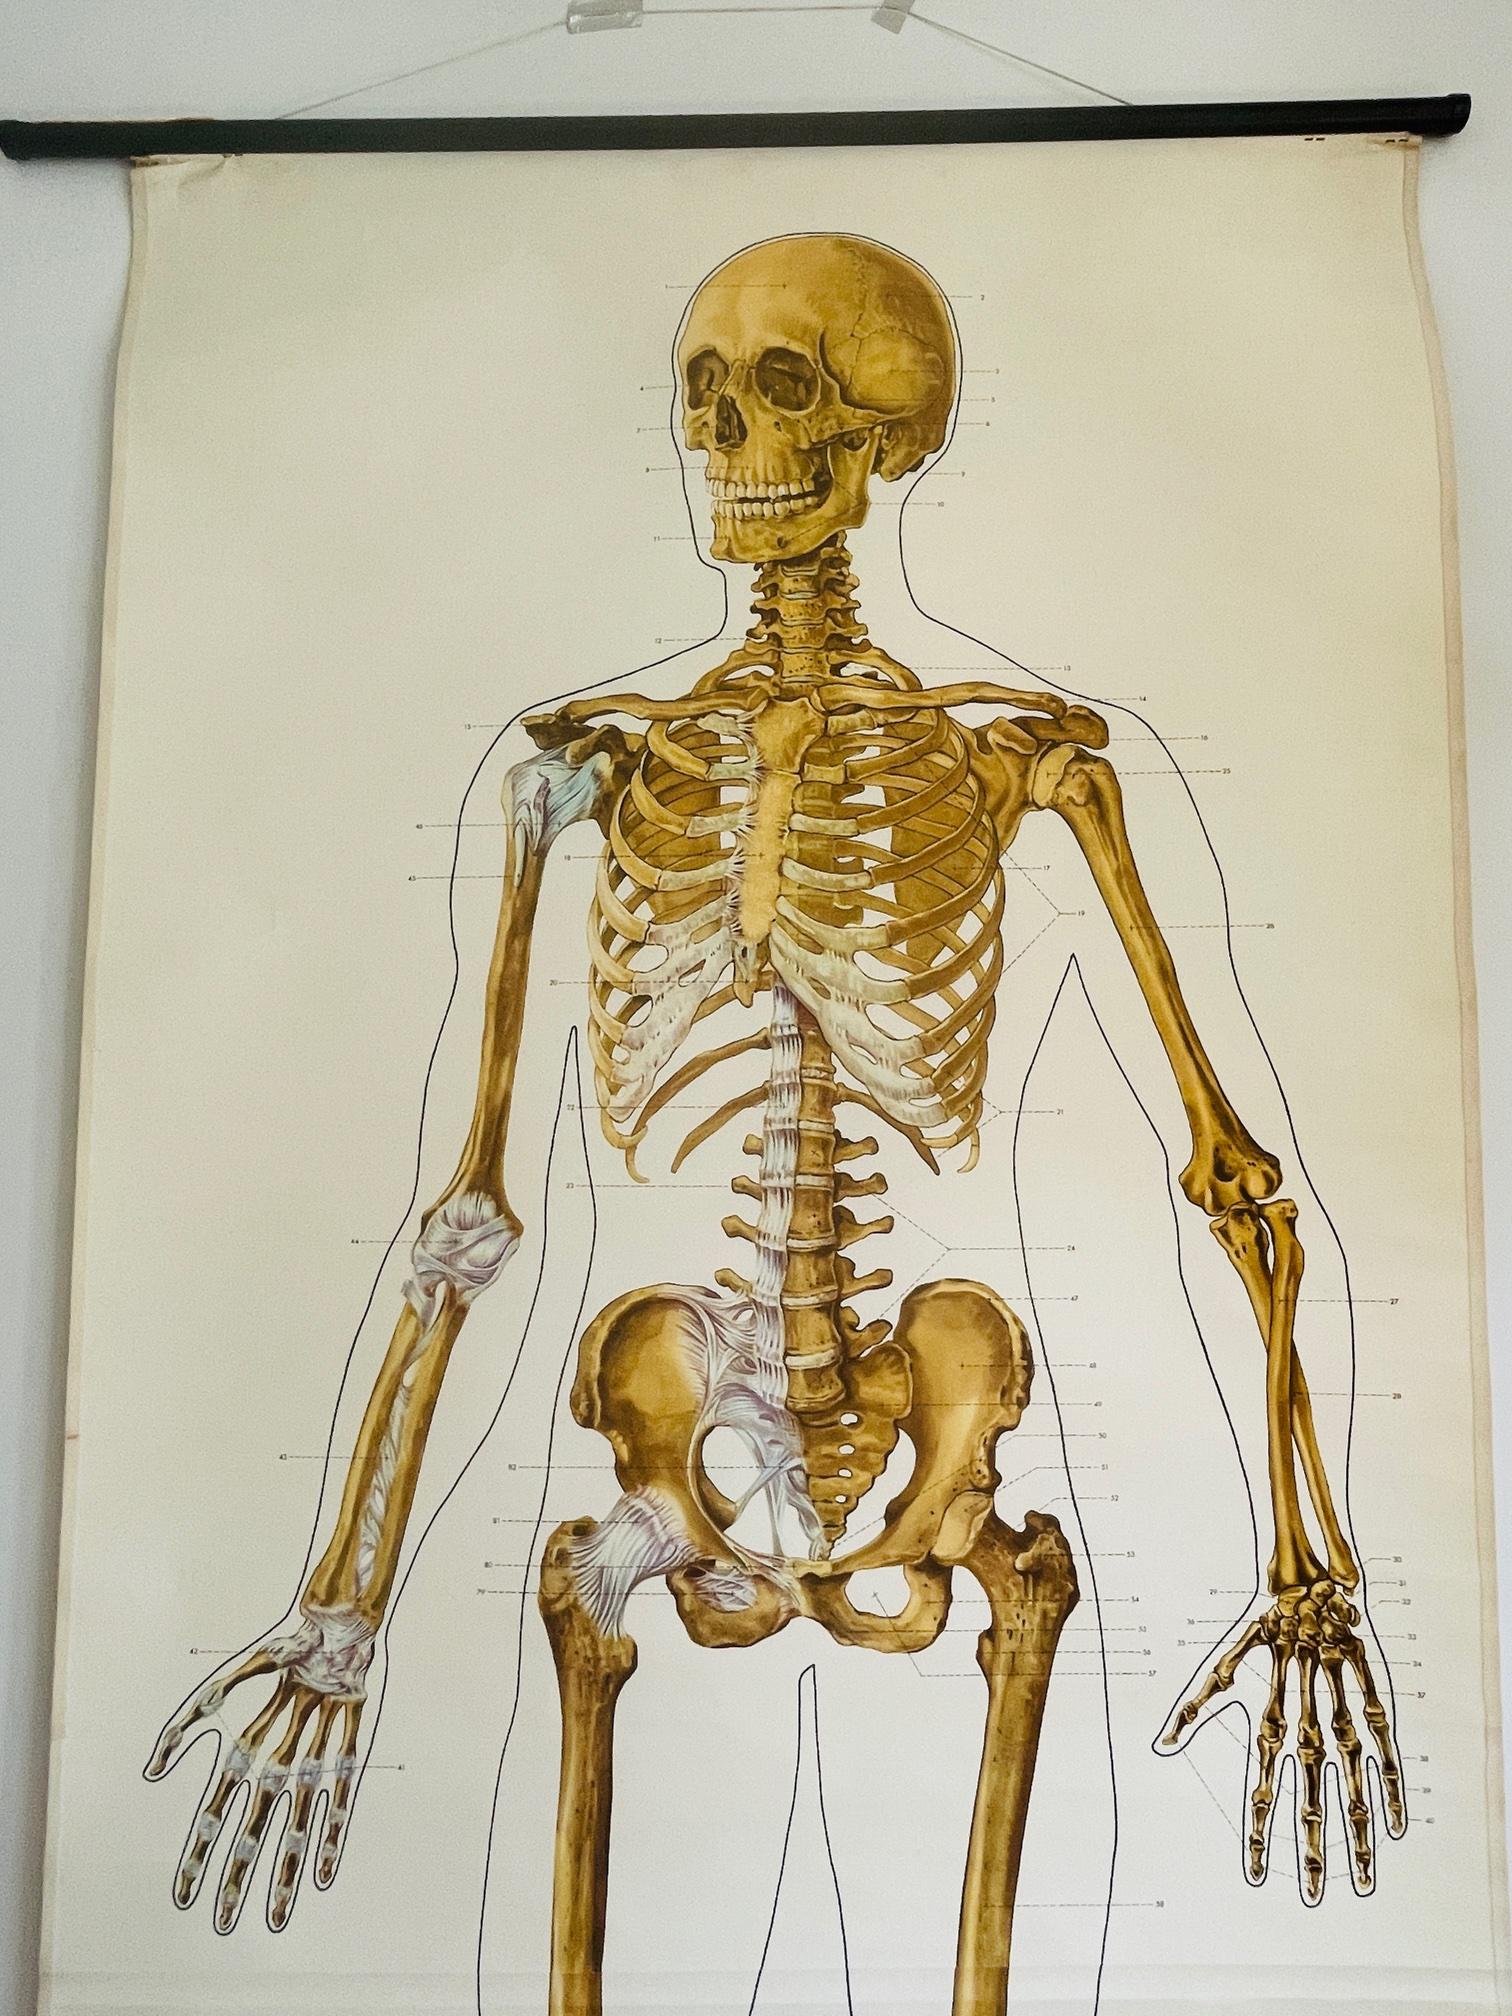 Ein echter Hingucker. Diese schöne anatomische Karte aus Leinen ist ein Muss für jeden, der medizinische Artikel liebt. Diese deutsche Karte wurde 1951 entworfen und sieht aus, als wäre sie heute gezeichnet worden. Es handelt sich um eine Ausgabe